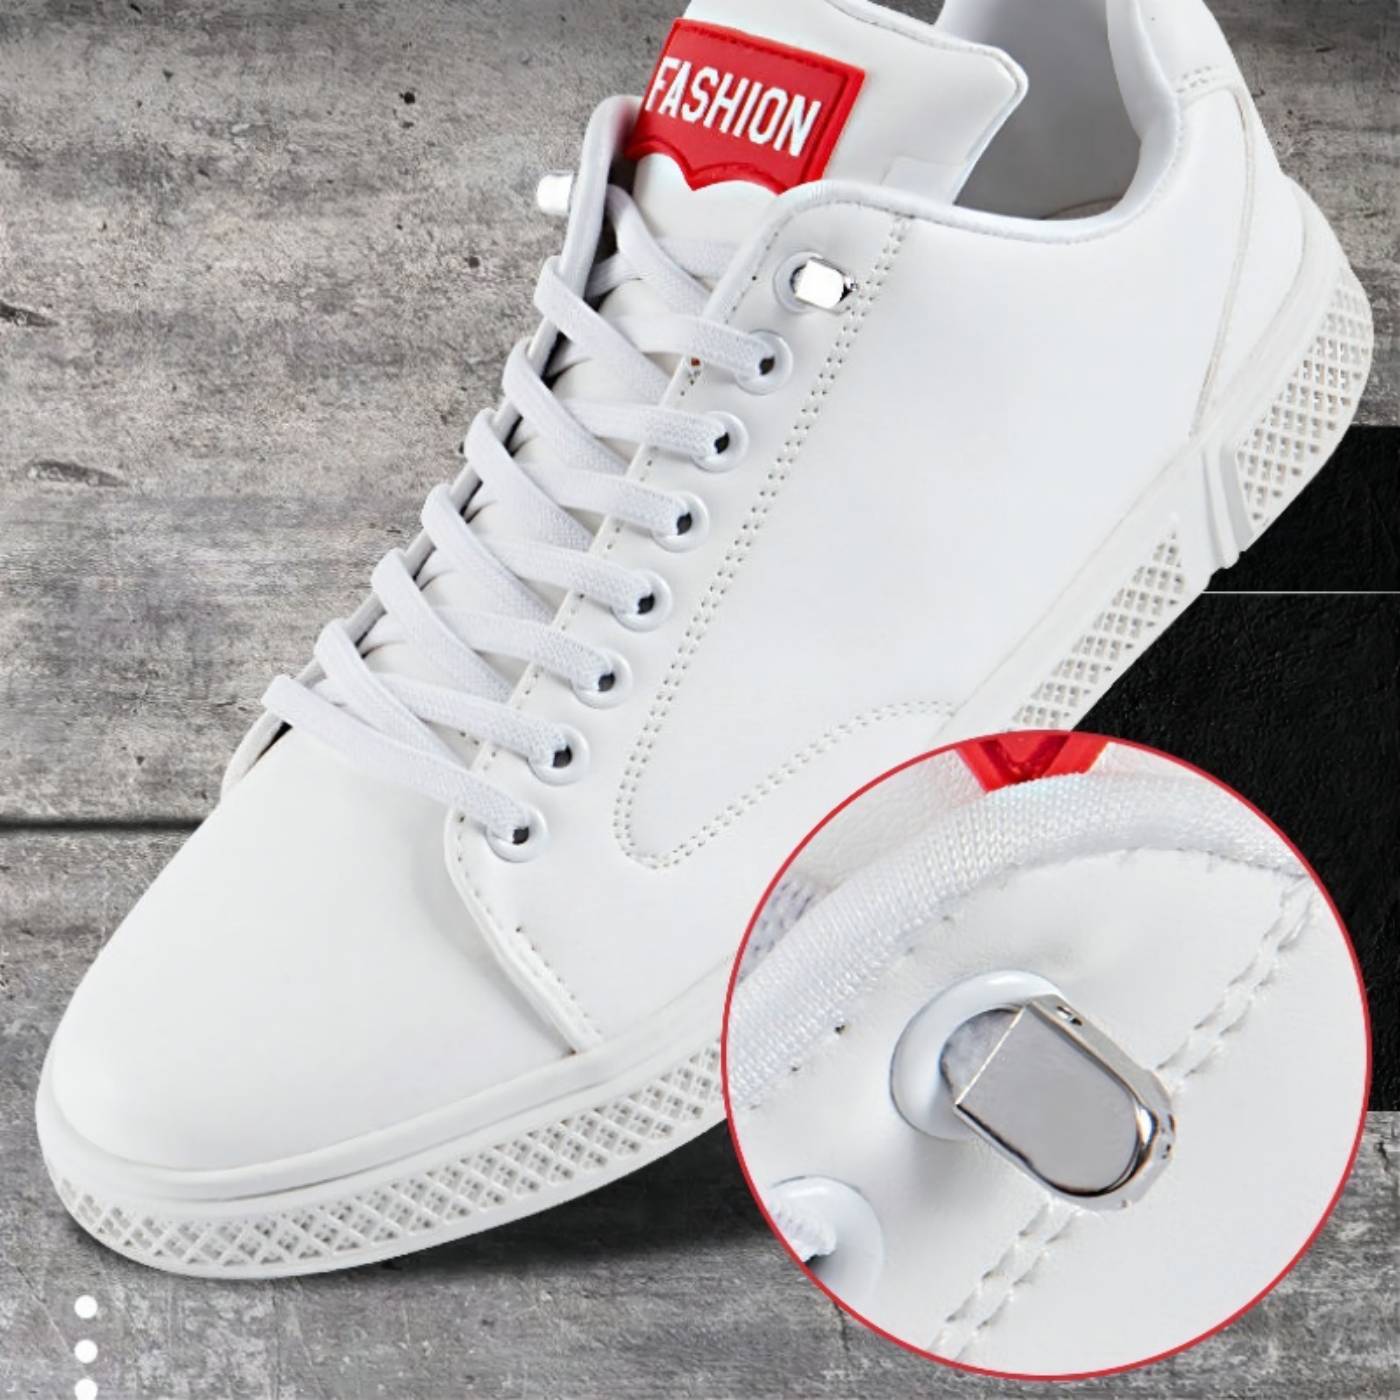 Zapatos Sport Blancos Con Cordones Elásticos Y Orificios Cetti